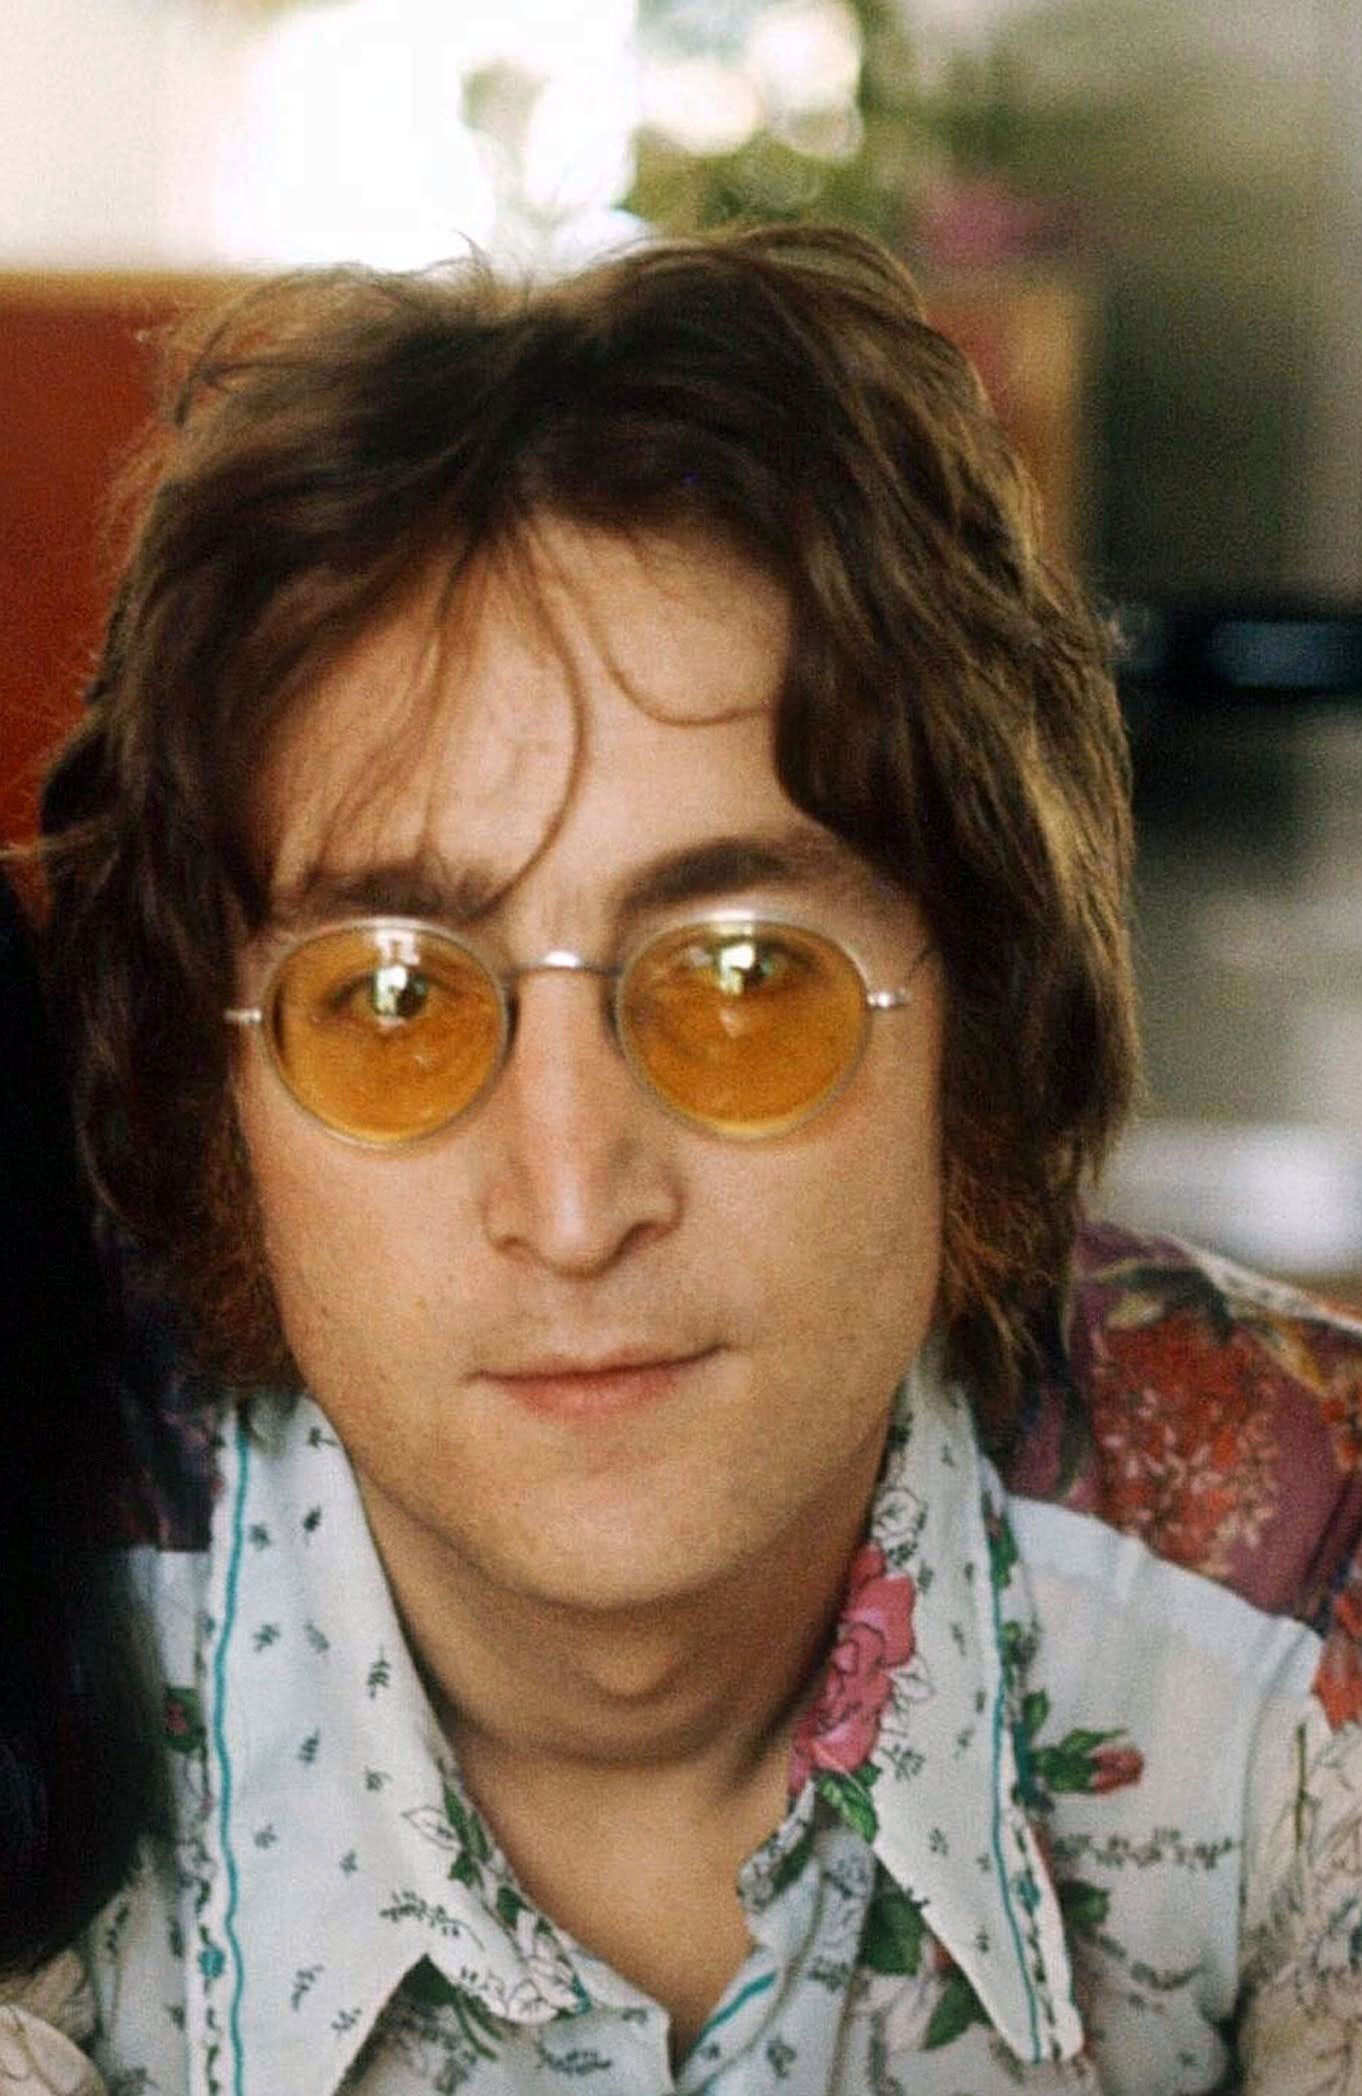 John Lennon kereklencsés szemüvegjével igazi divatot teremtett. - De azért ne jöjjön vissza... Vagy de?